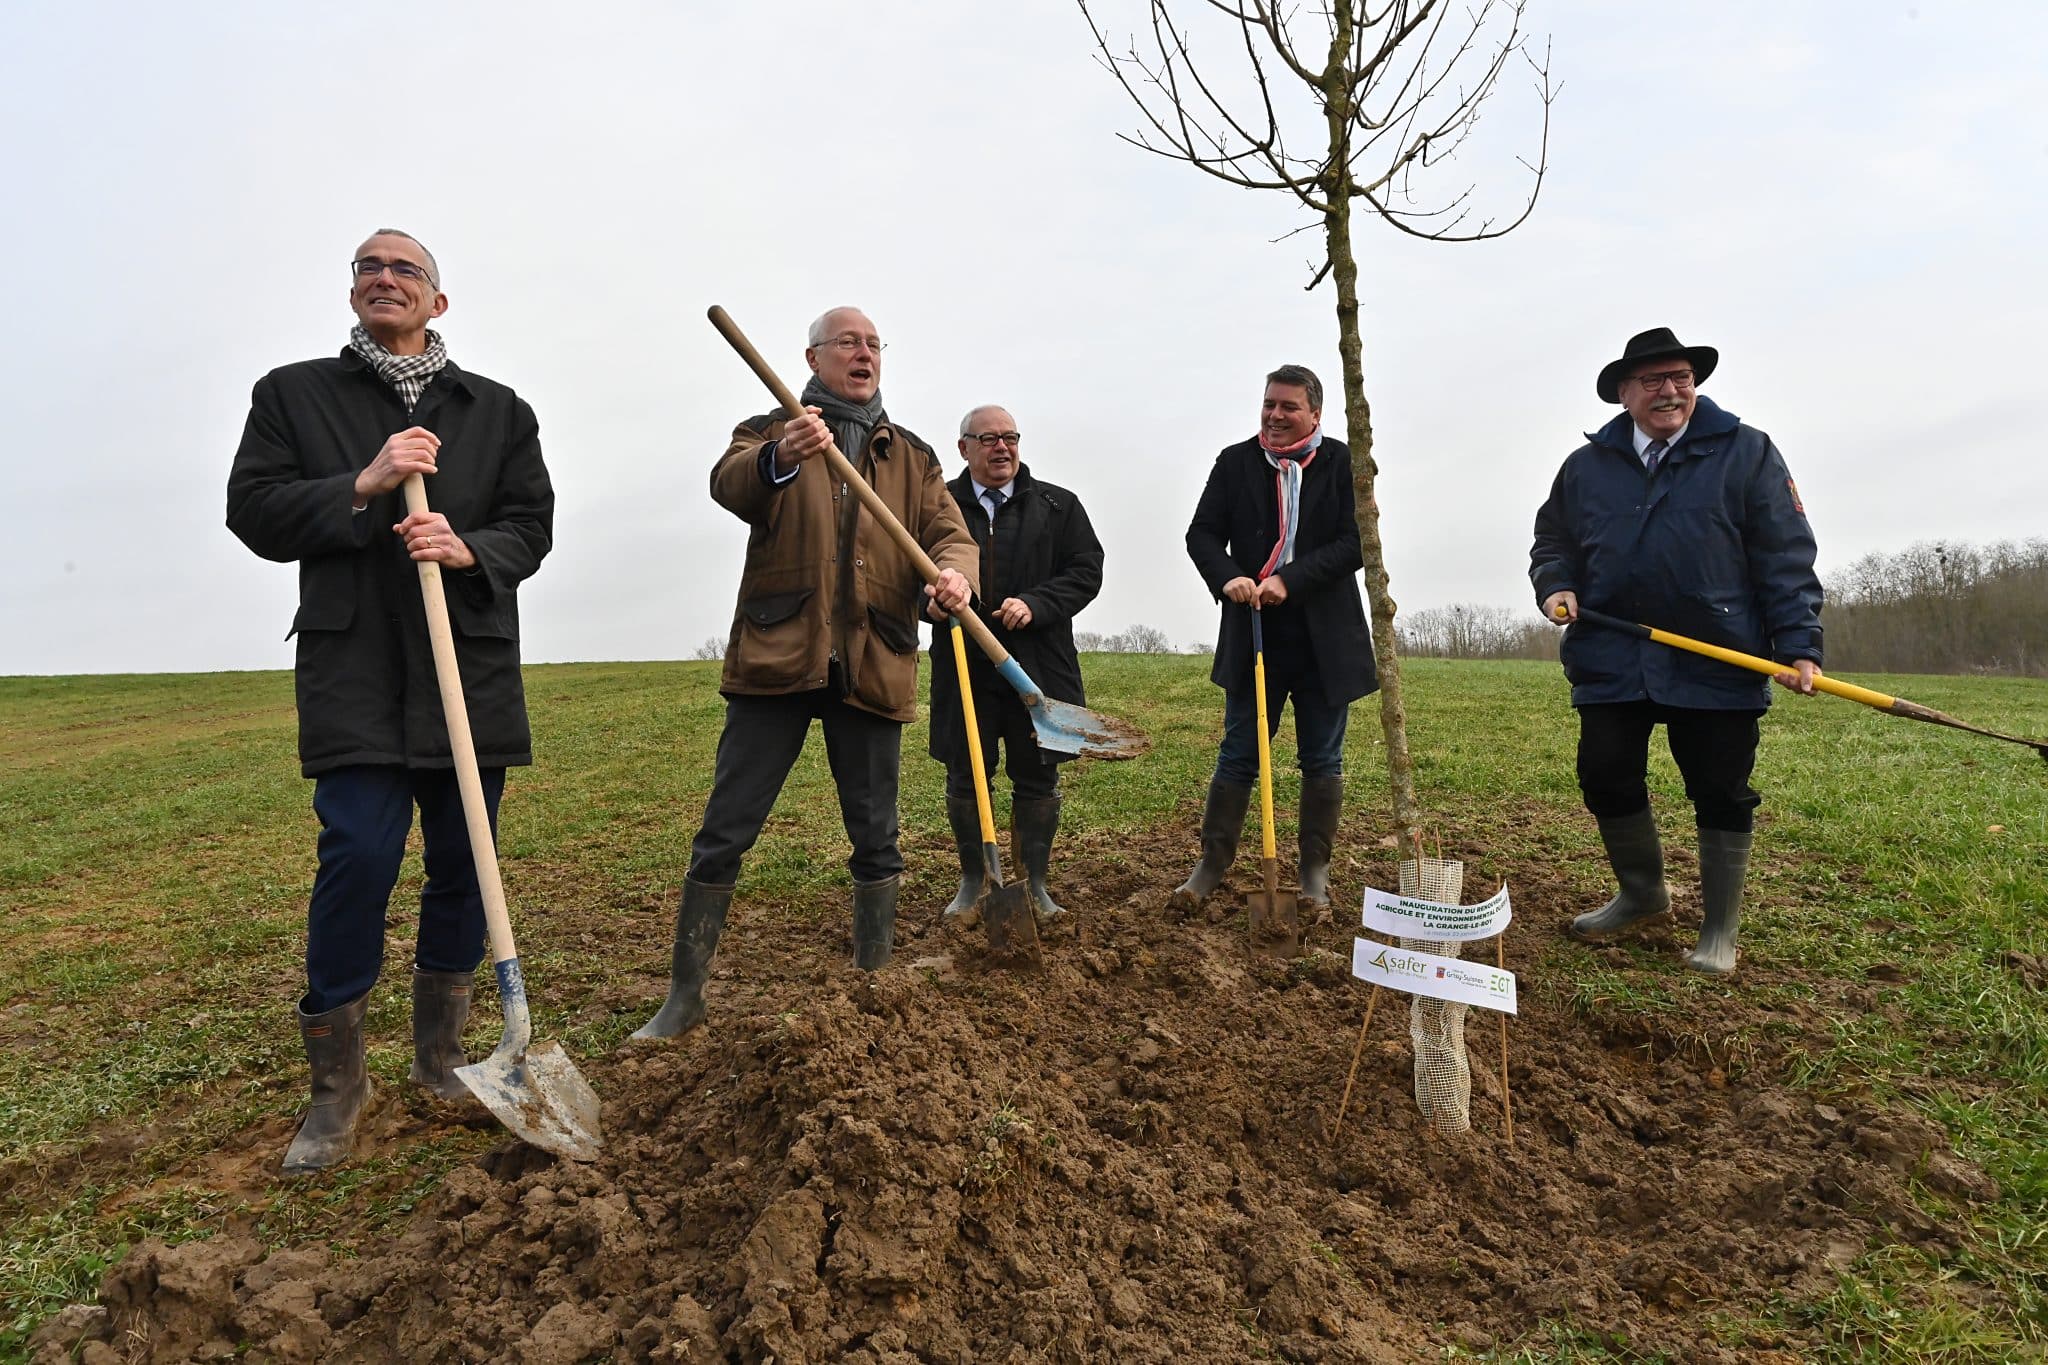 Grisy-Suisnes - inauguration - plantation arbre en symbole du renouveau agricole et écologique